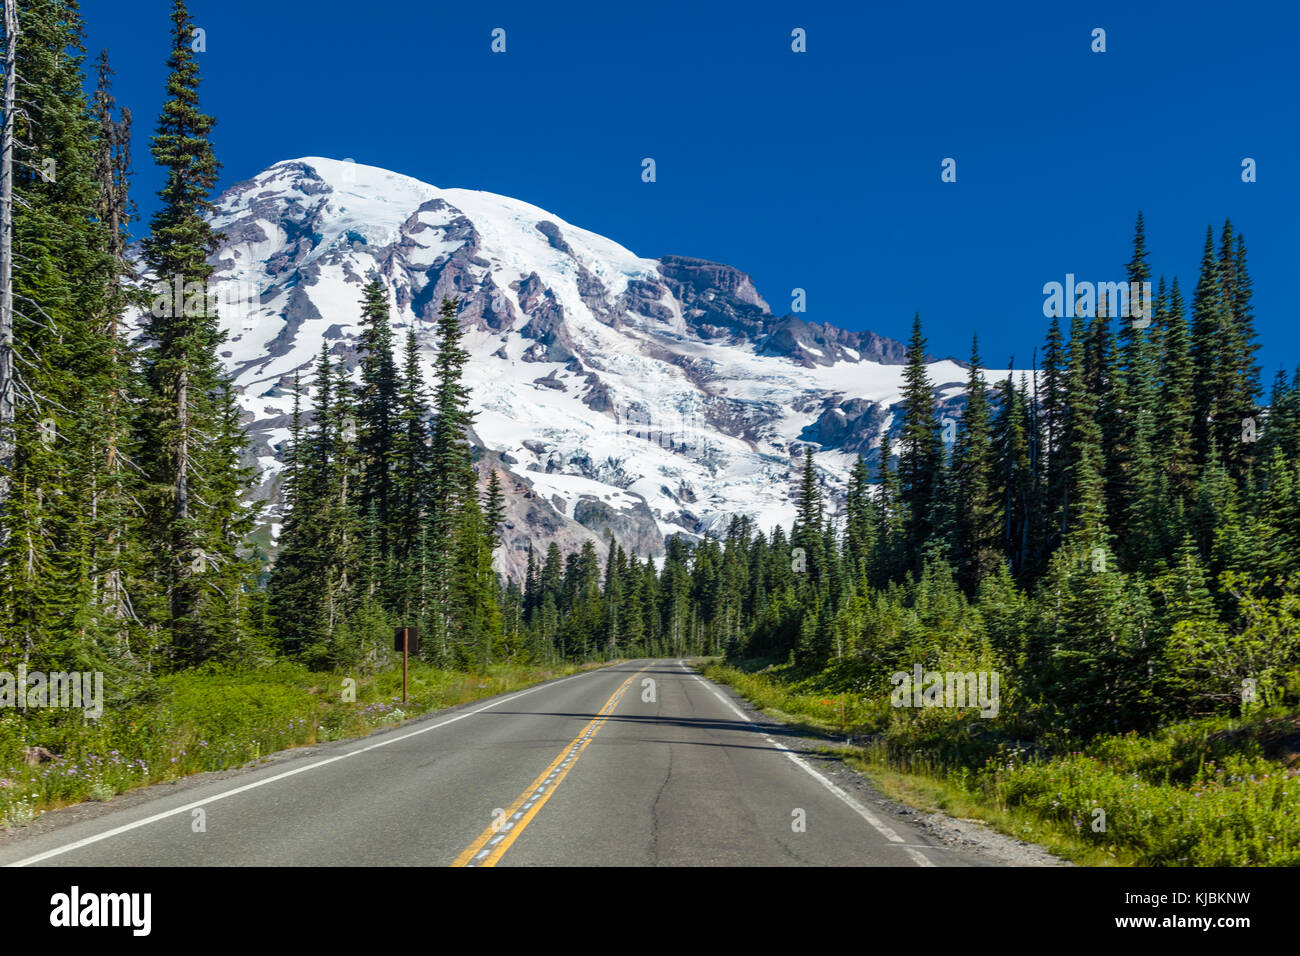 Park road avec mt rainier Mount Rainier National Park dans l'état de Washington aux États-Unis Banque D'Images